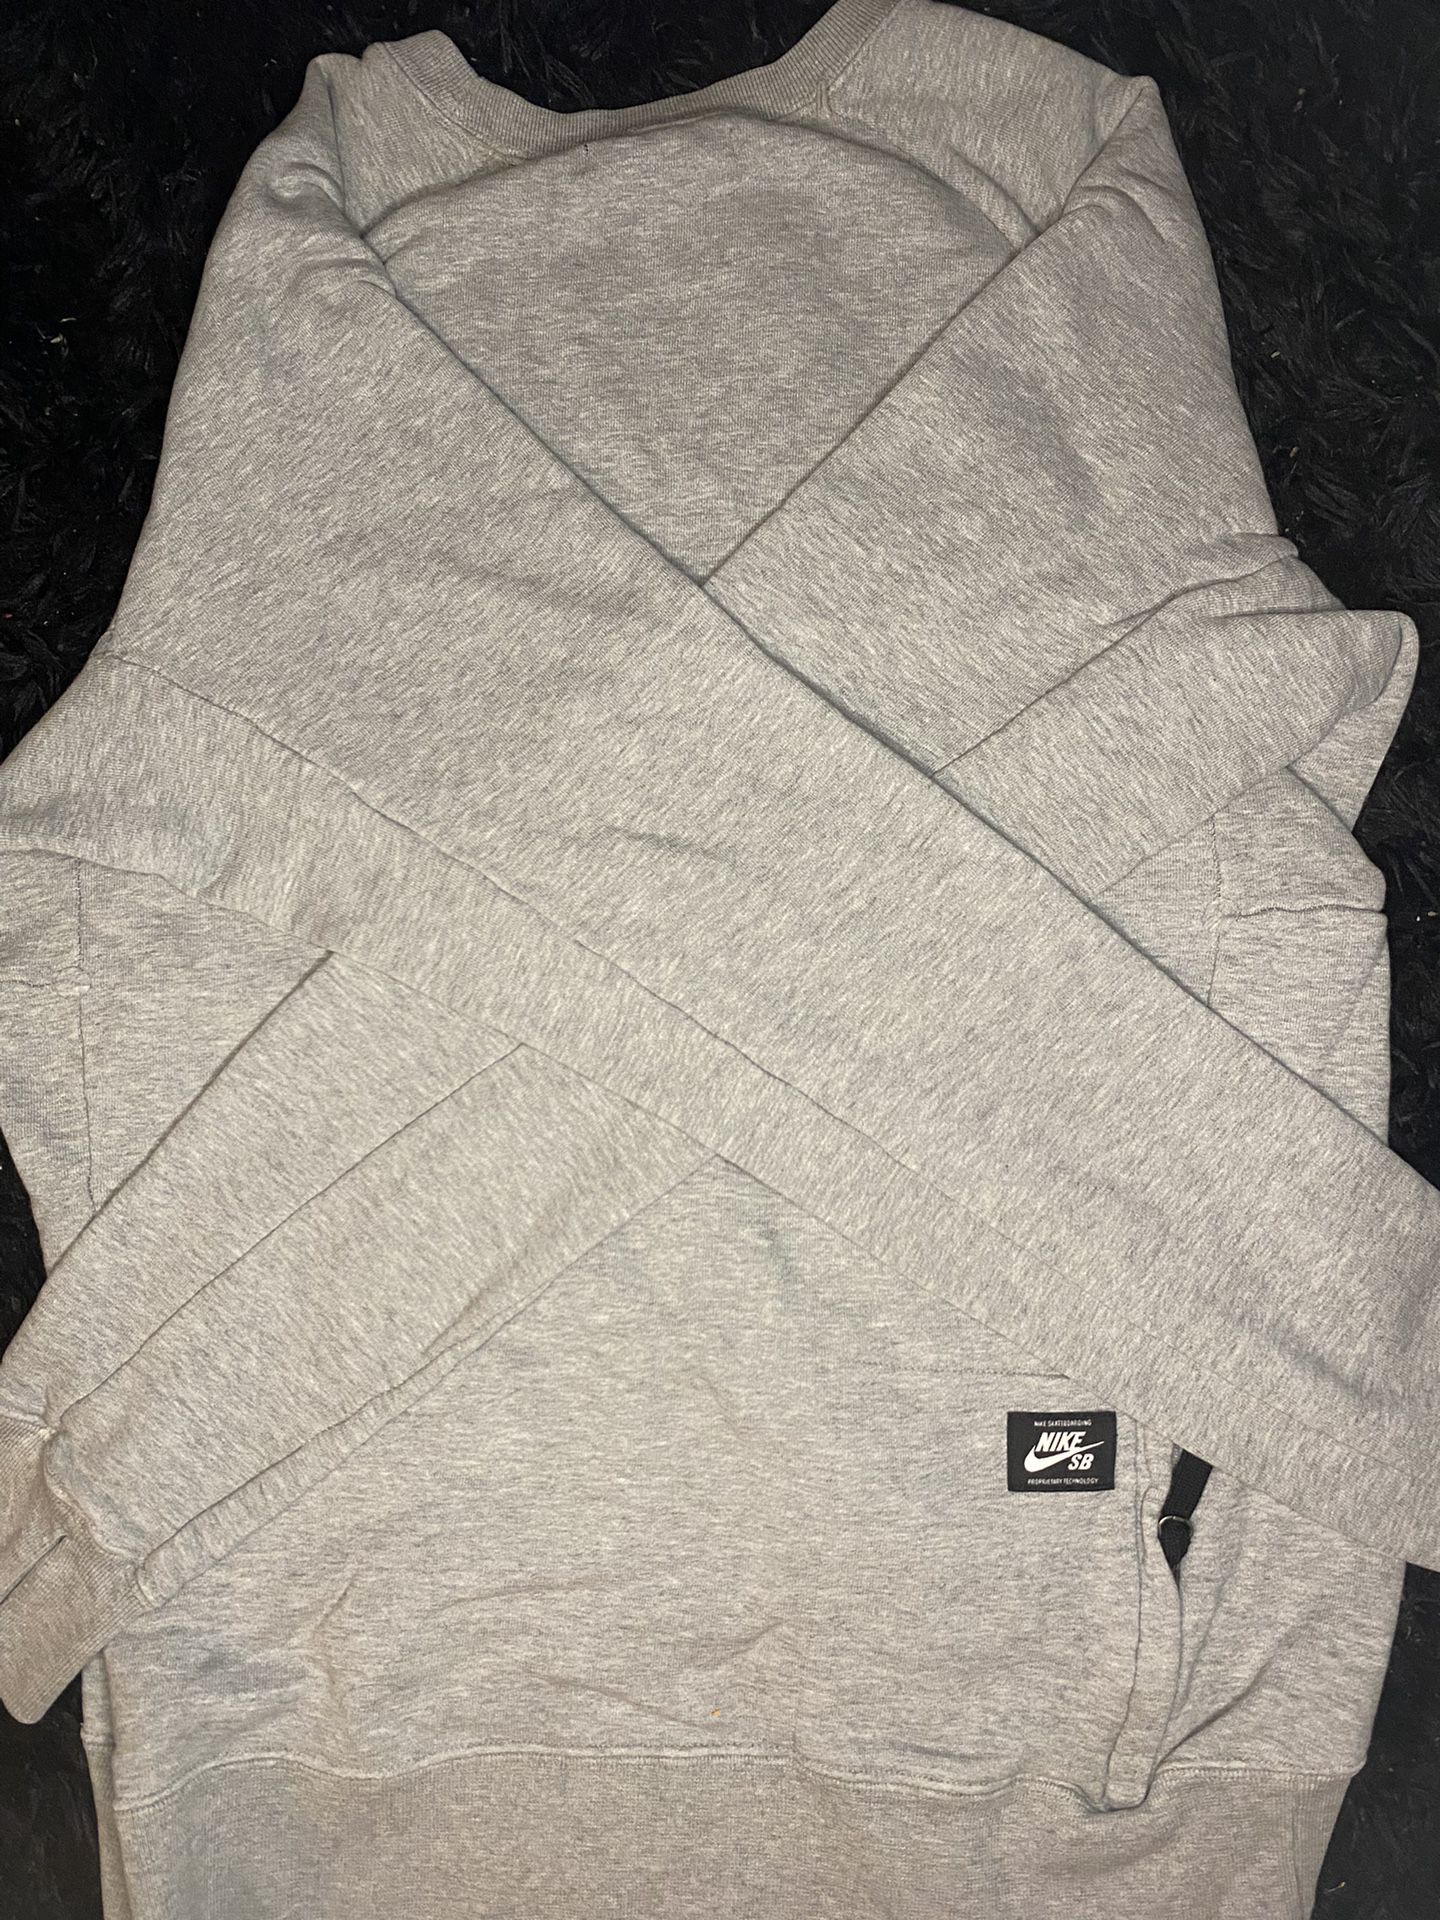 Grey Nike Sweatshirt